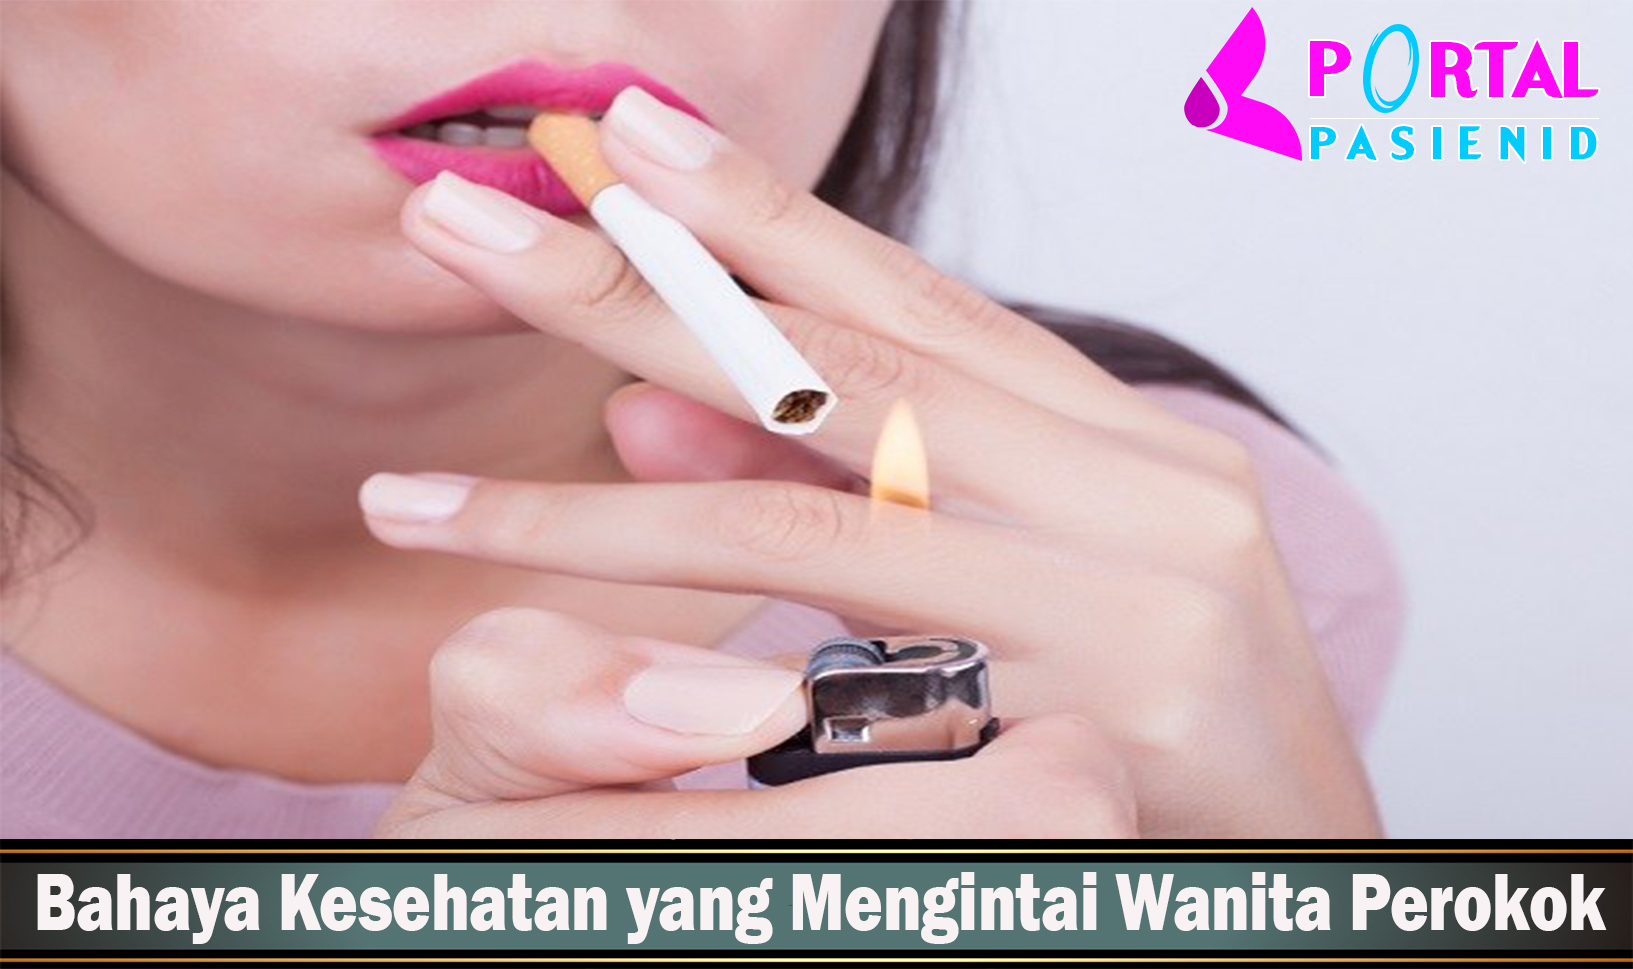 Bahaya Kesehatan yang Mengintai Wanita Perokok